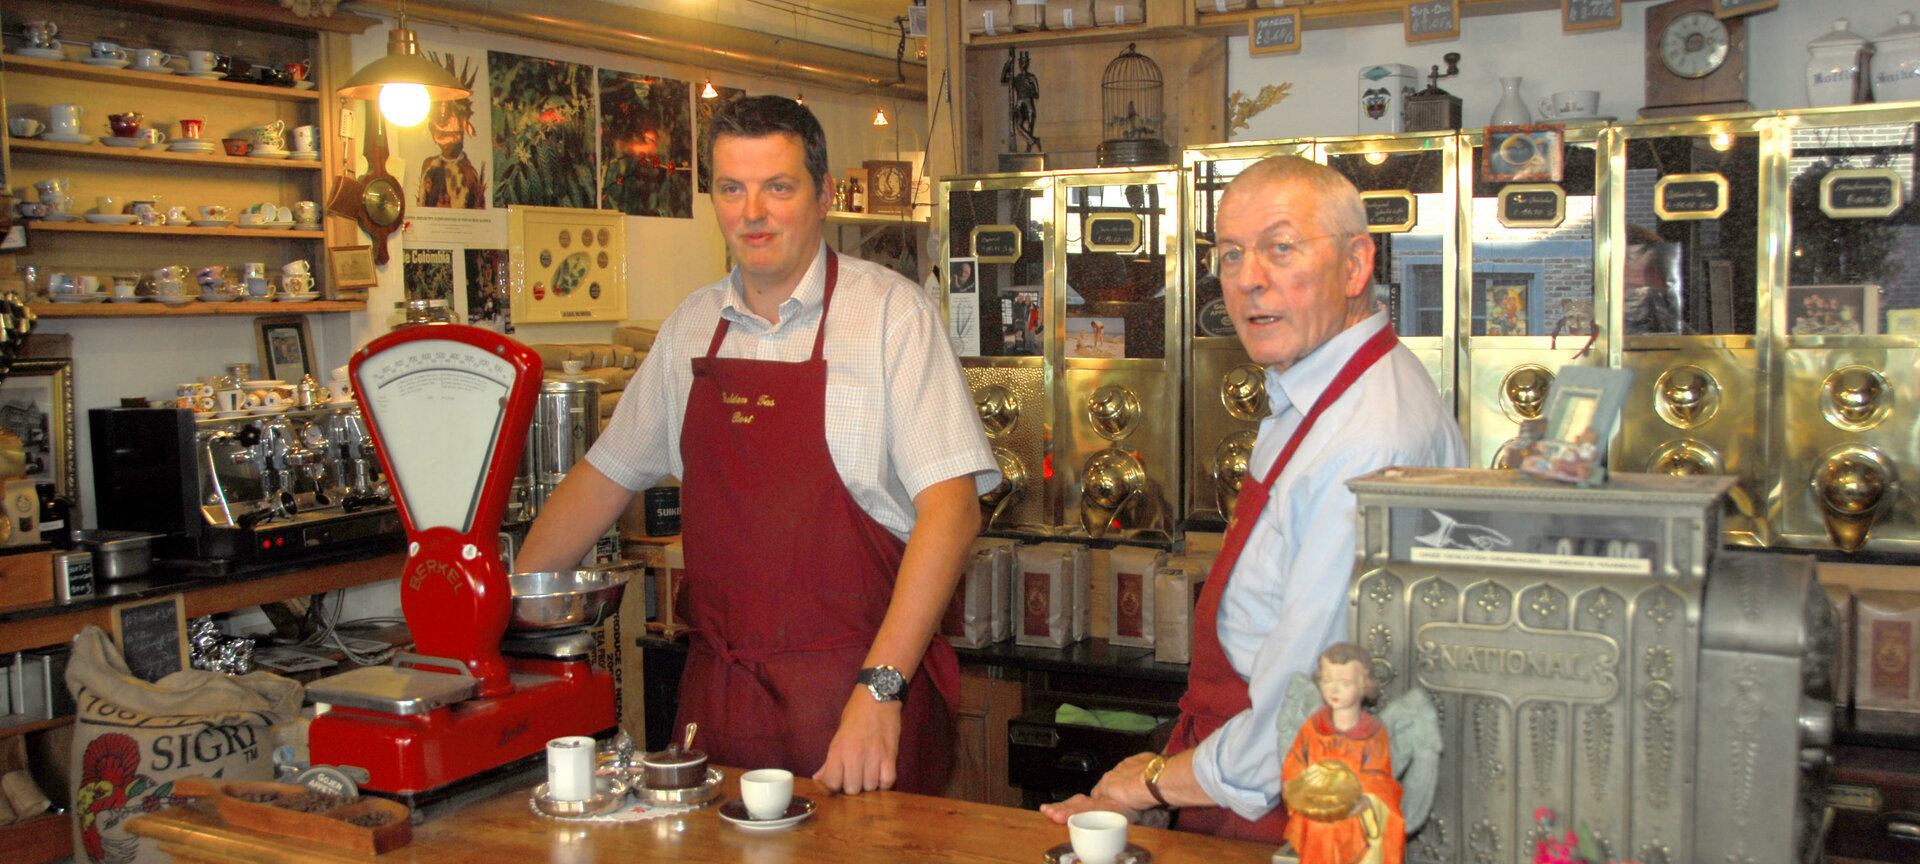 Ambachtelijke koffiebranderij Gulden Tas - Winkel koffiebranderij